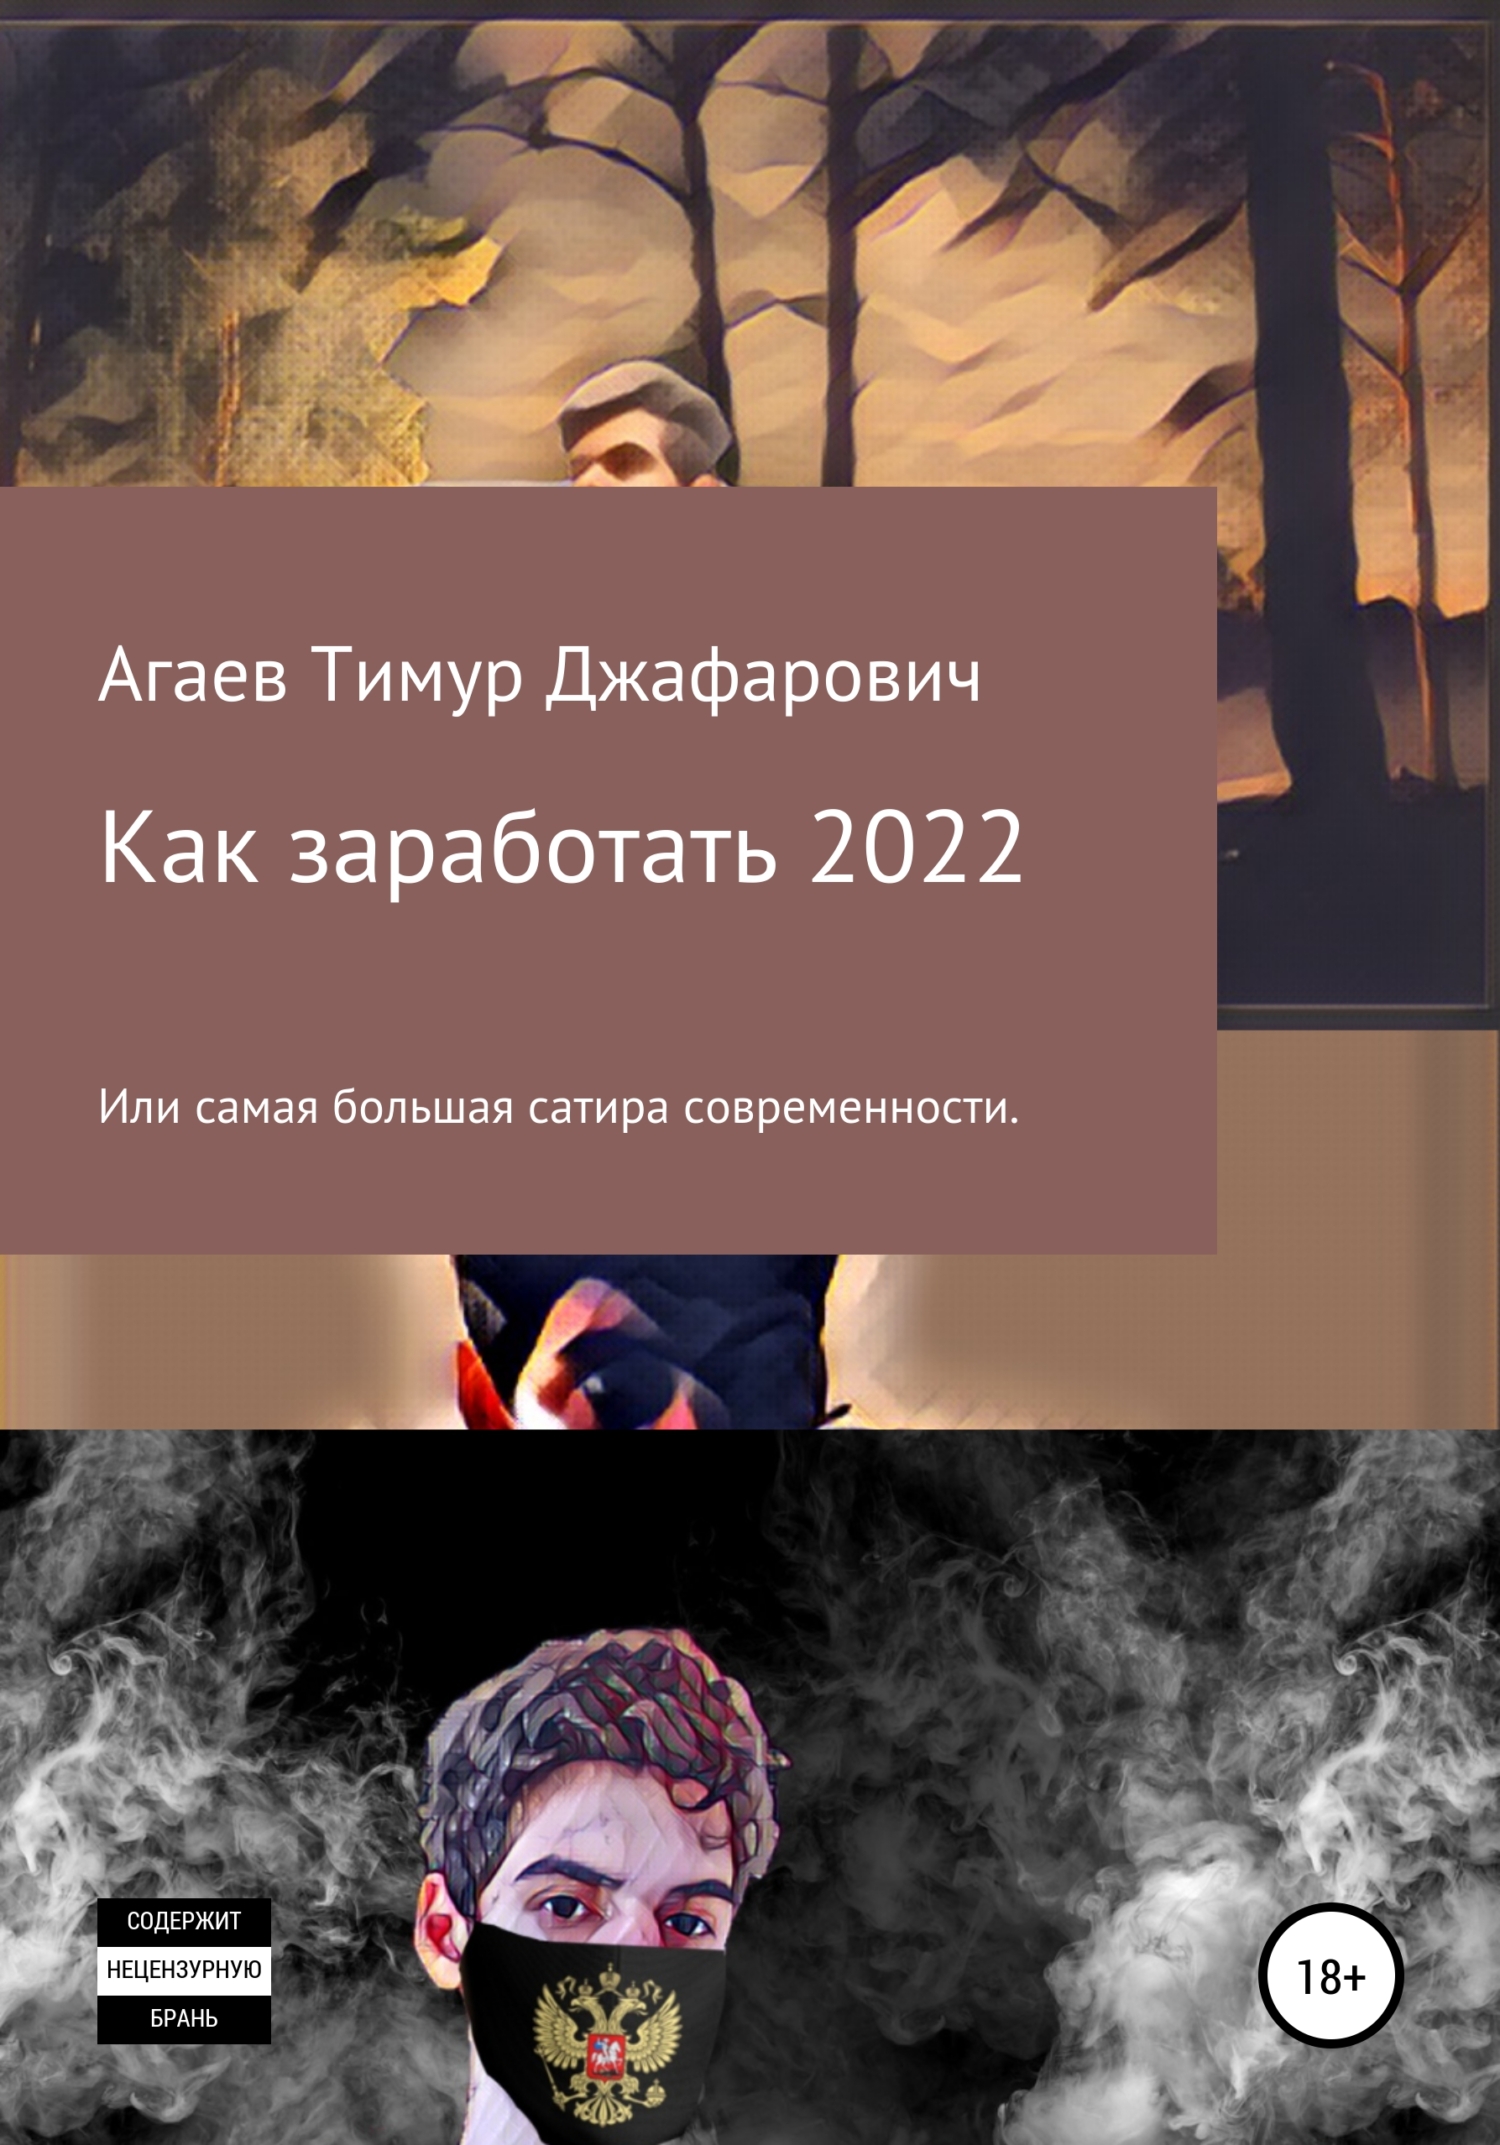 Книга  Как заработать 2022 созданная Тимур Джафарович Агаев может относится к жанру банковское дело, интернет-бизнес, публицистика. Стоимость электронной книги Как заработать 2022 с идентификатором 67753160 составляет  руб.